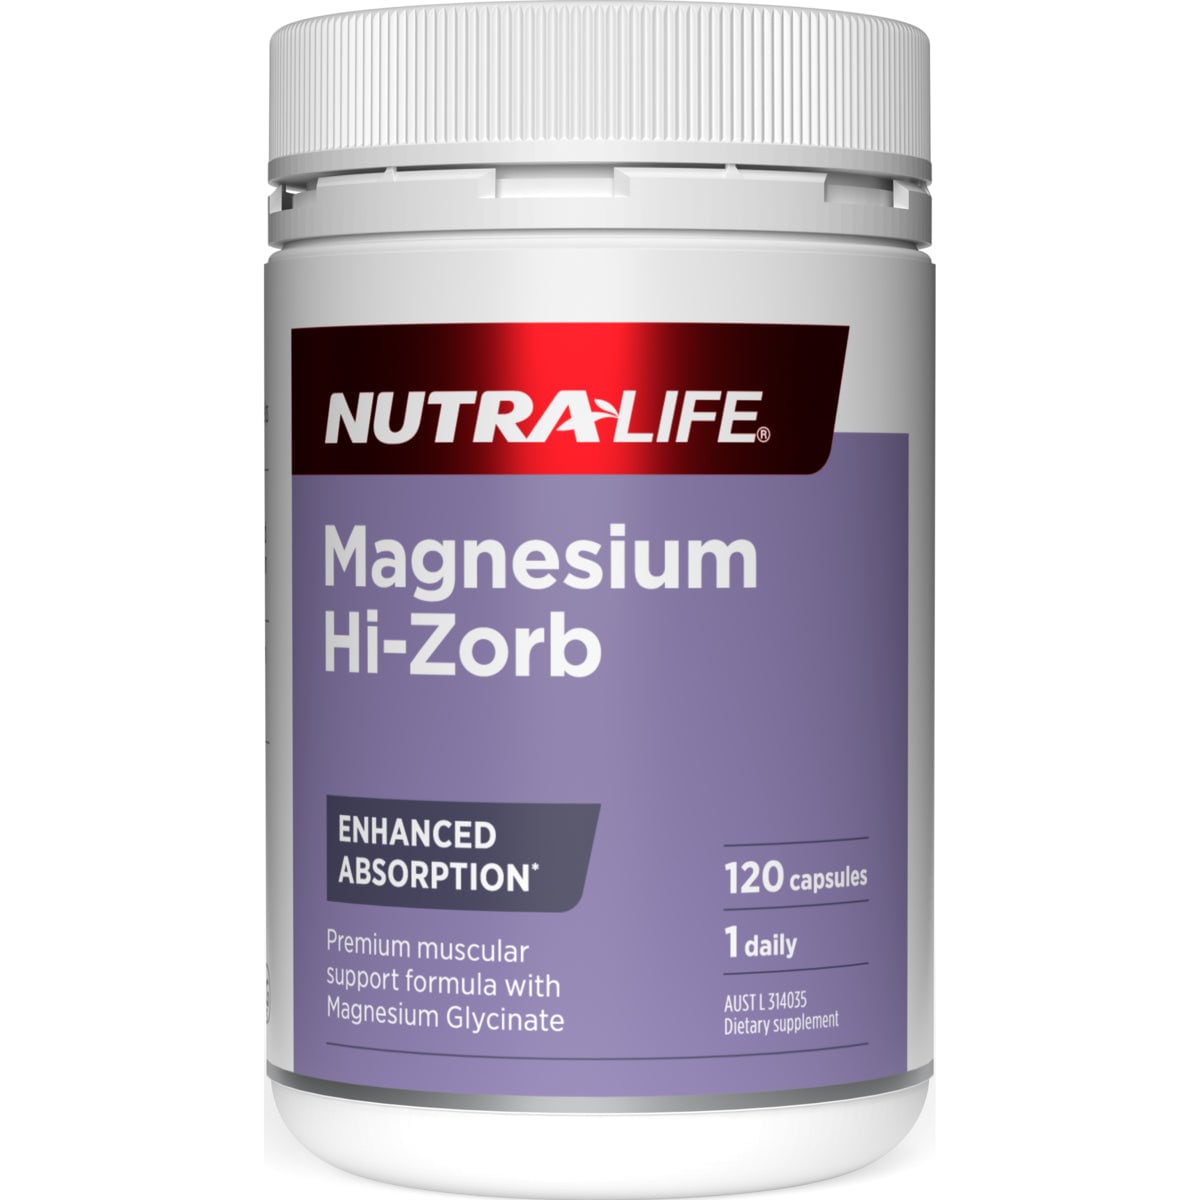 Nutra-Life Magnesium Hi-Zorb 120 Capsules Australia